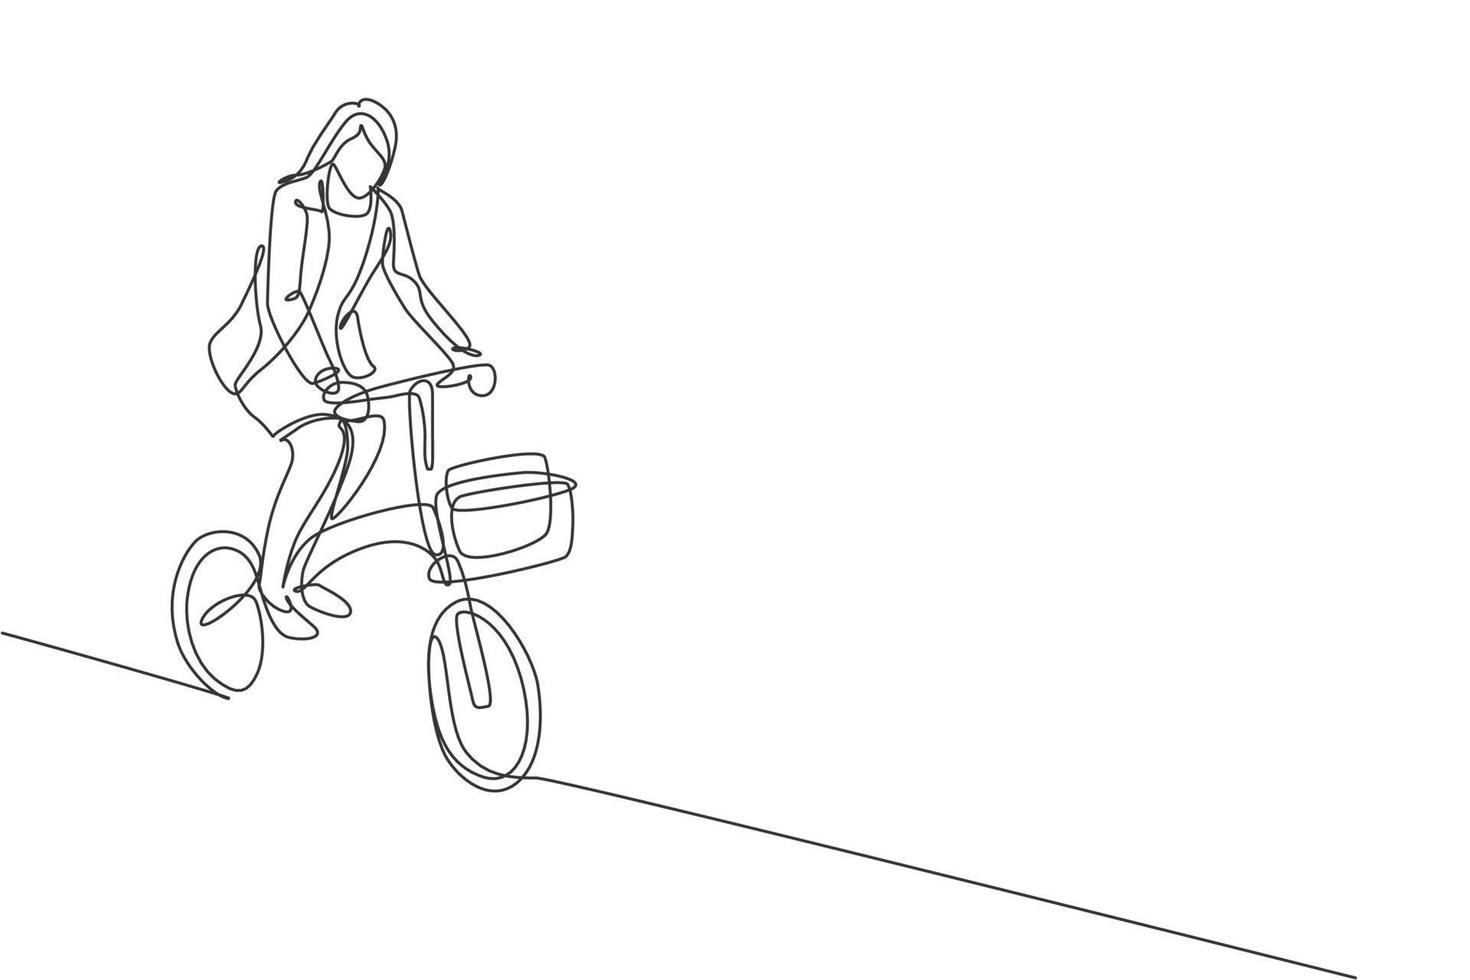 um desenho de linha contínua de jovem gerente profissional ciclismo passeio de bicicleta dobrada para seu escritório. conceito de estilo de vida urbano de trabalho saudável. ilustração em vetor design de desenho de linha única dinâmica